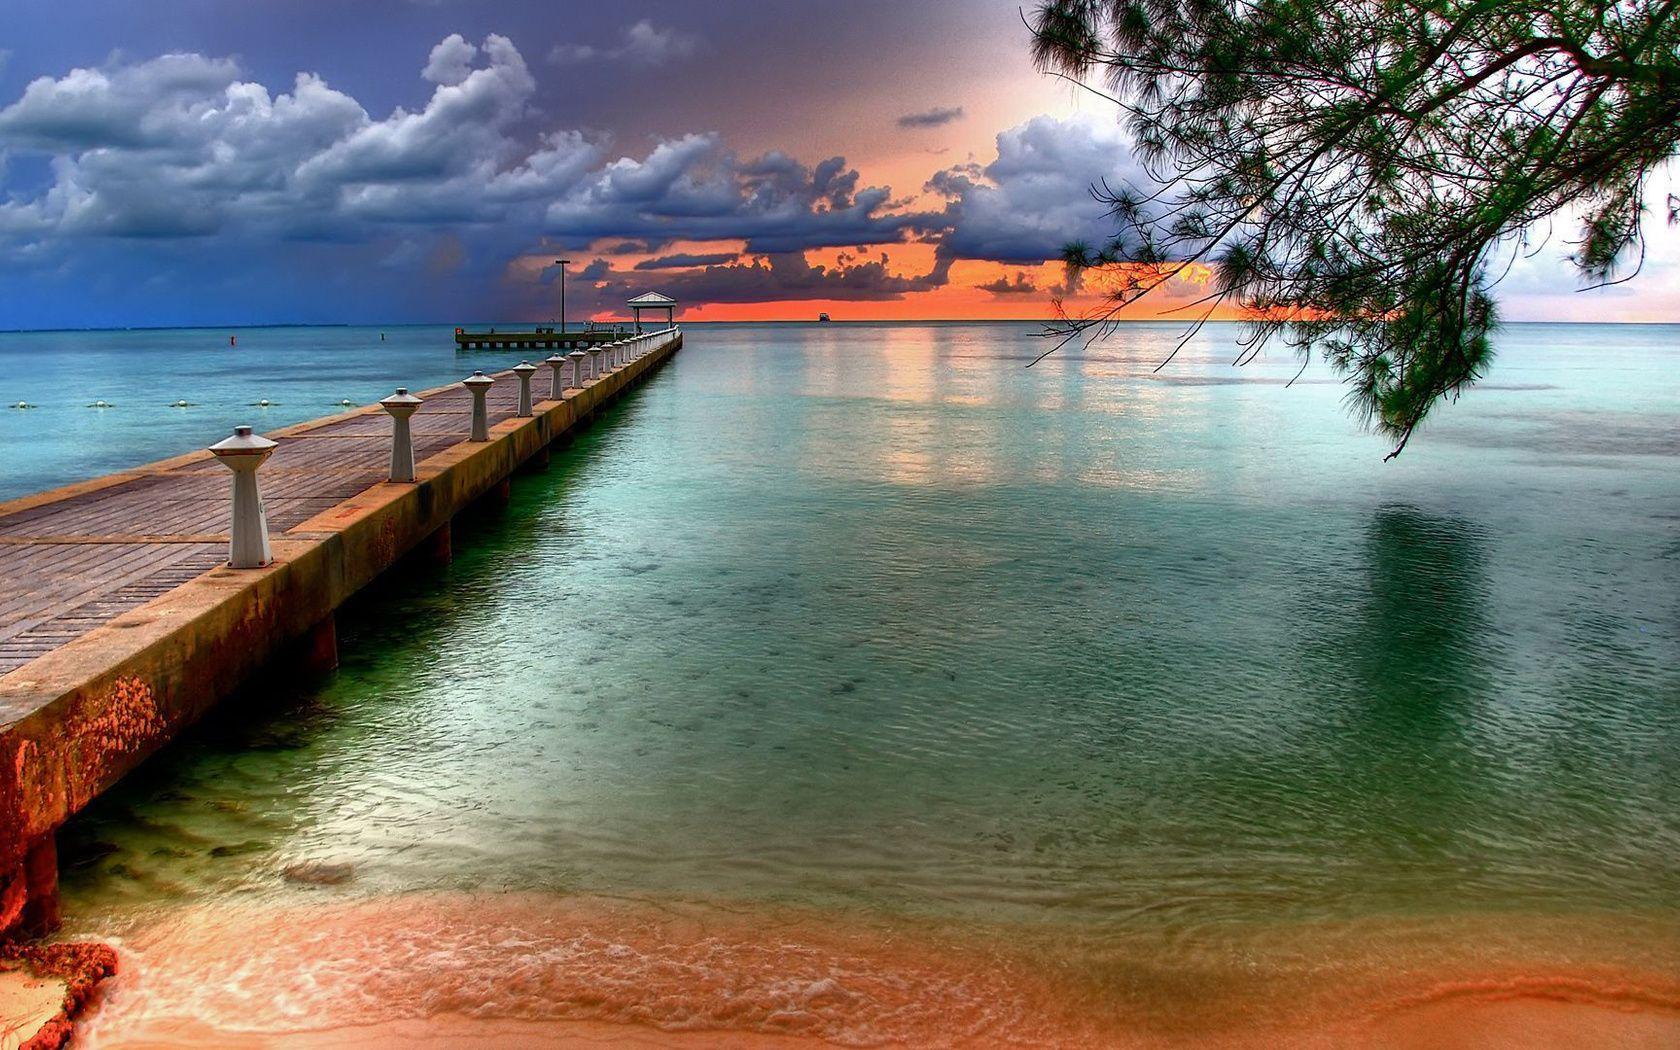 Hình nền Florida Keys sẽ khơi gợi cảm giác thư giãn tràn đầy năng lượng cho bạn với những hình ảnh tuyệt đẹp của vùng đất xinh đẹp này. Hãy đến và chiêm ngưỡng để cảm nhận trọn vẹn sức hút của Florida Keys.